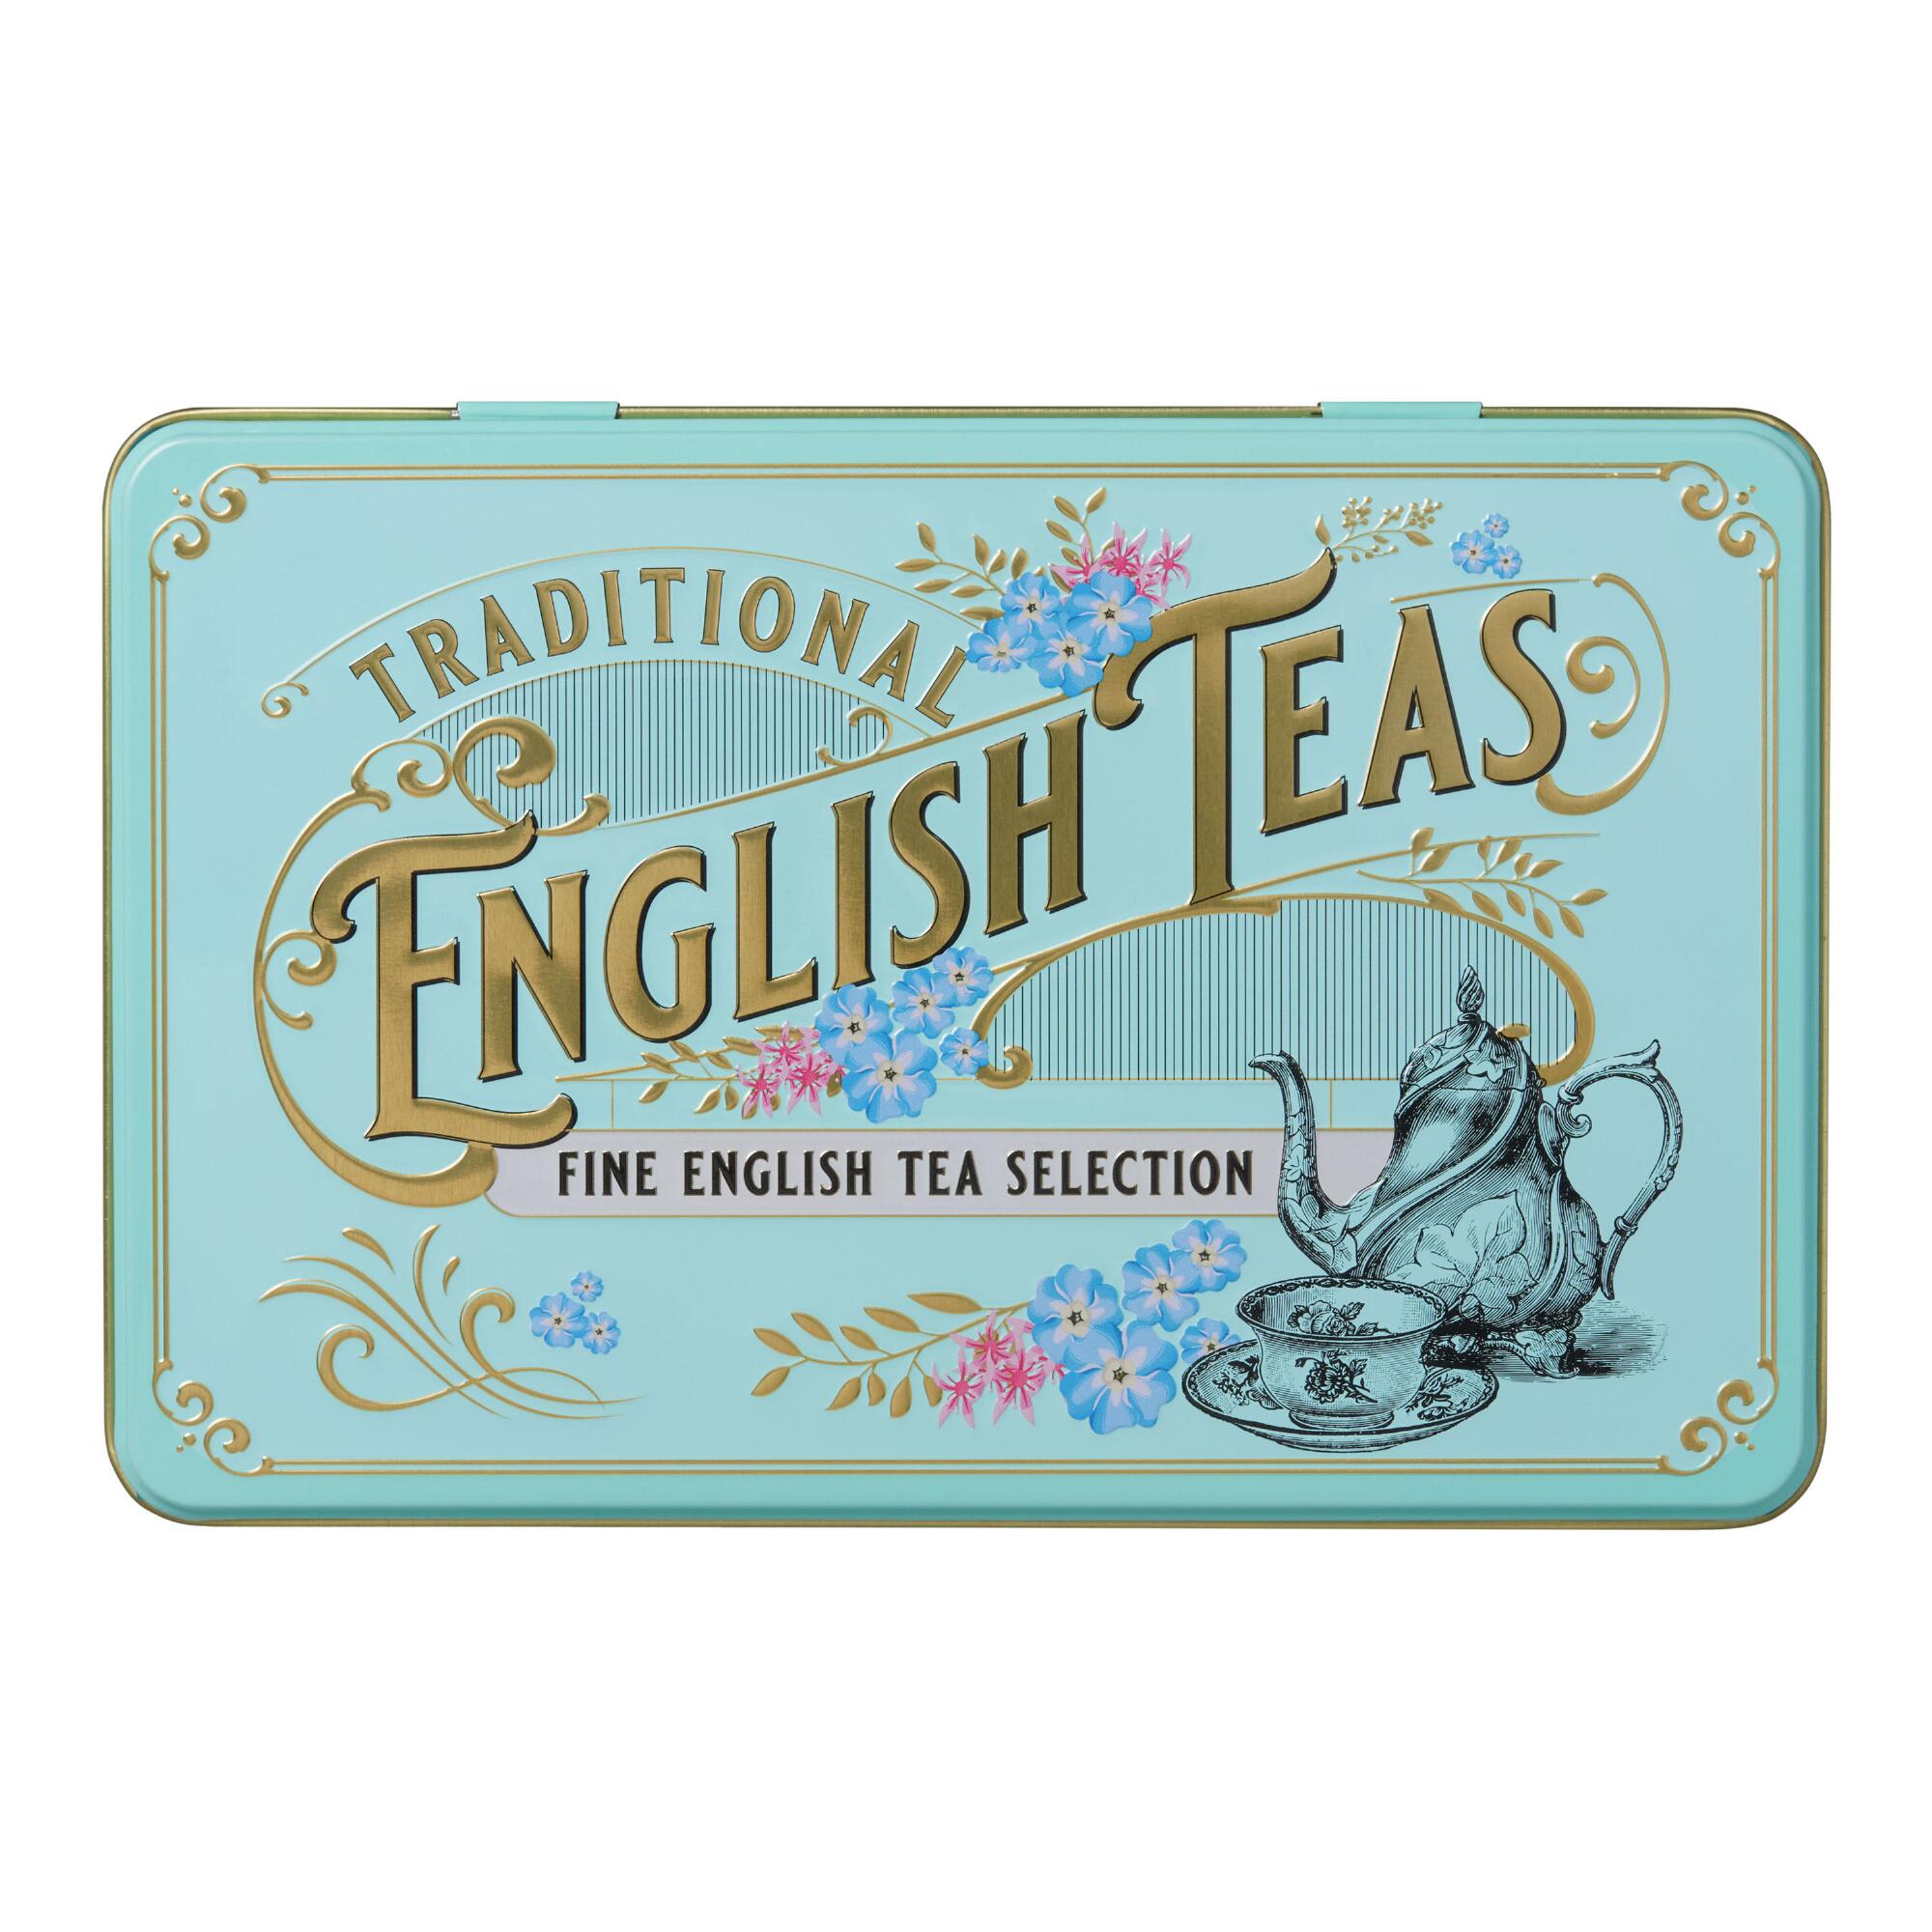 New English Teas Vintage English Tea Tin 72 Count by World Market